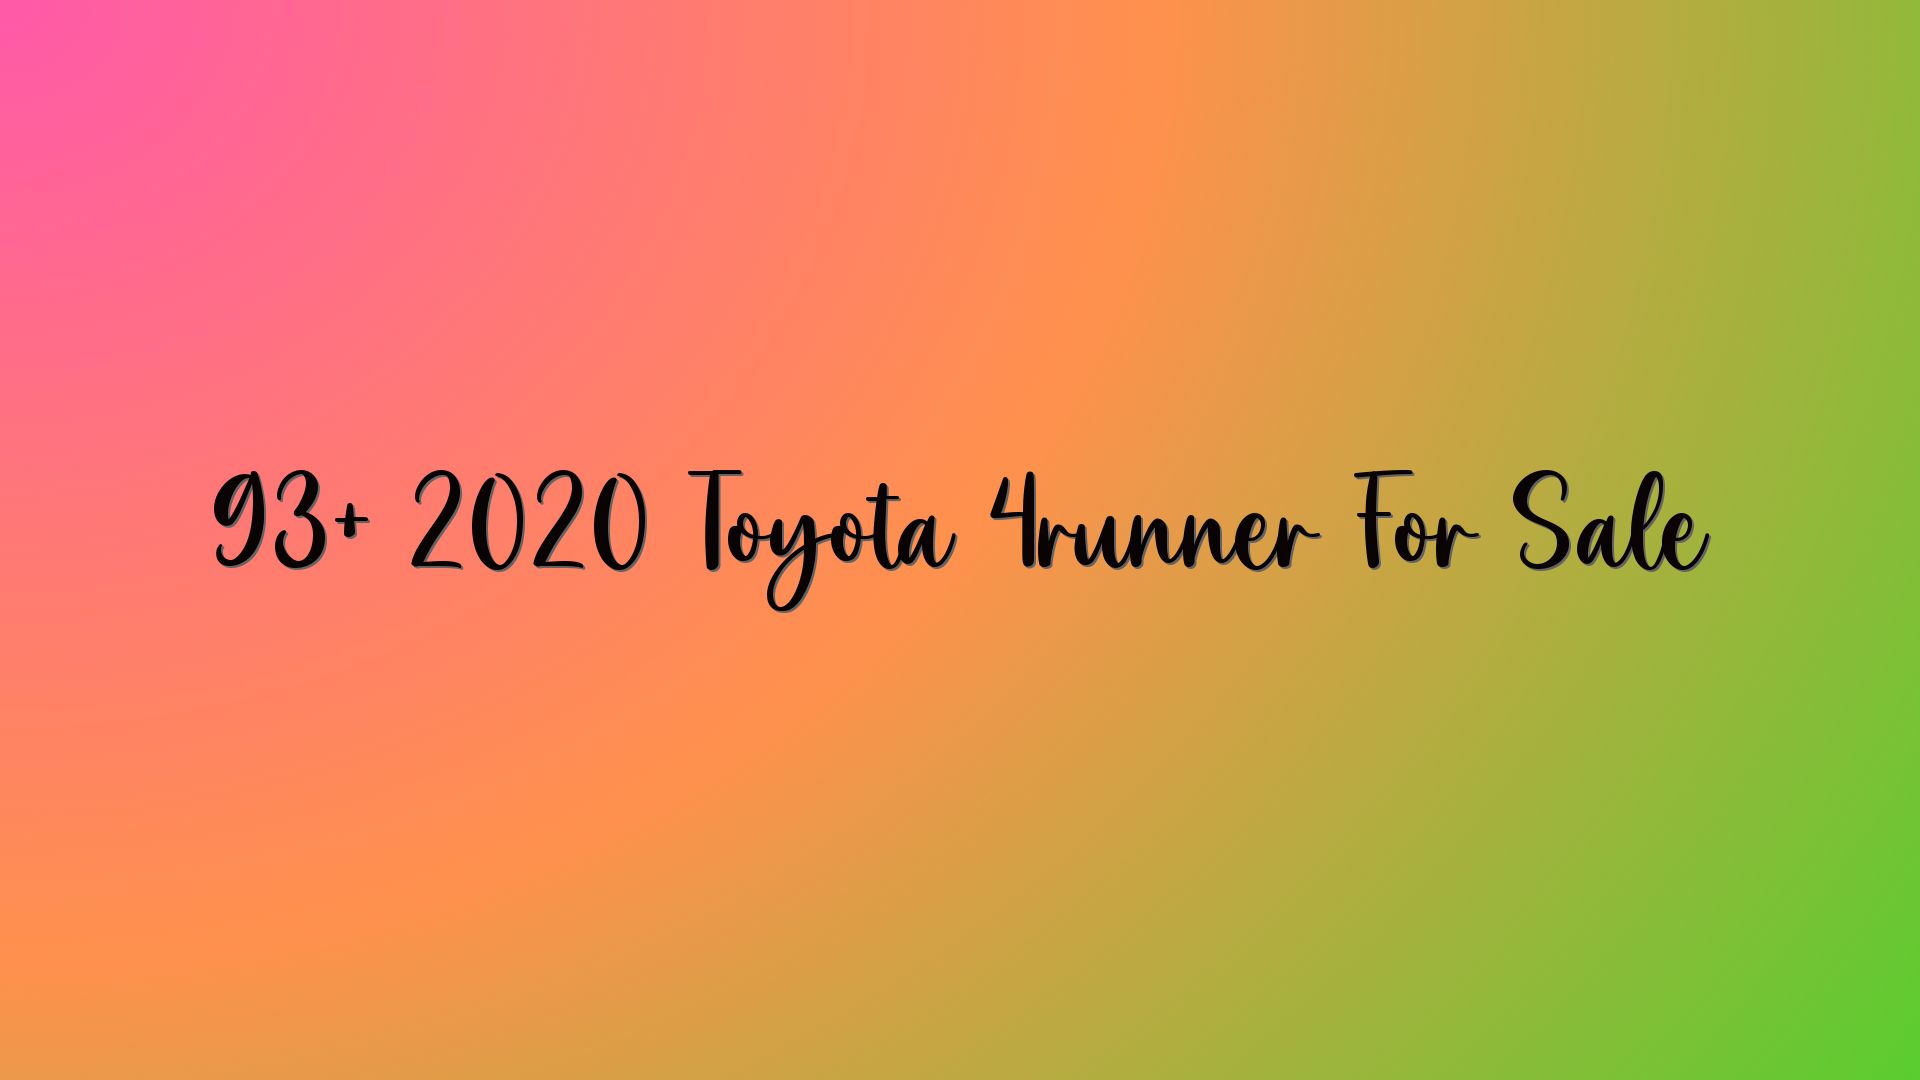 93+ 2020 Toyota 4runner For Sale